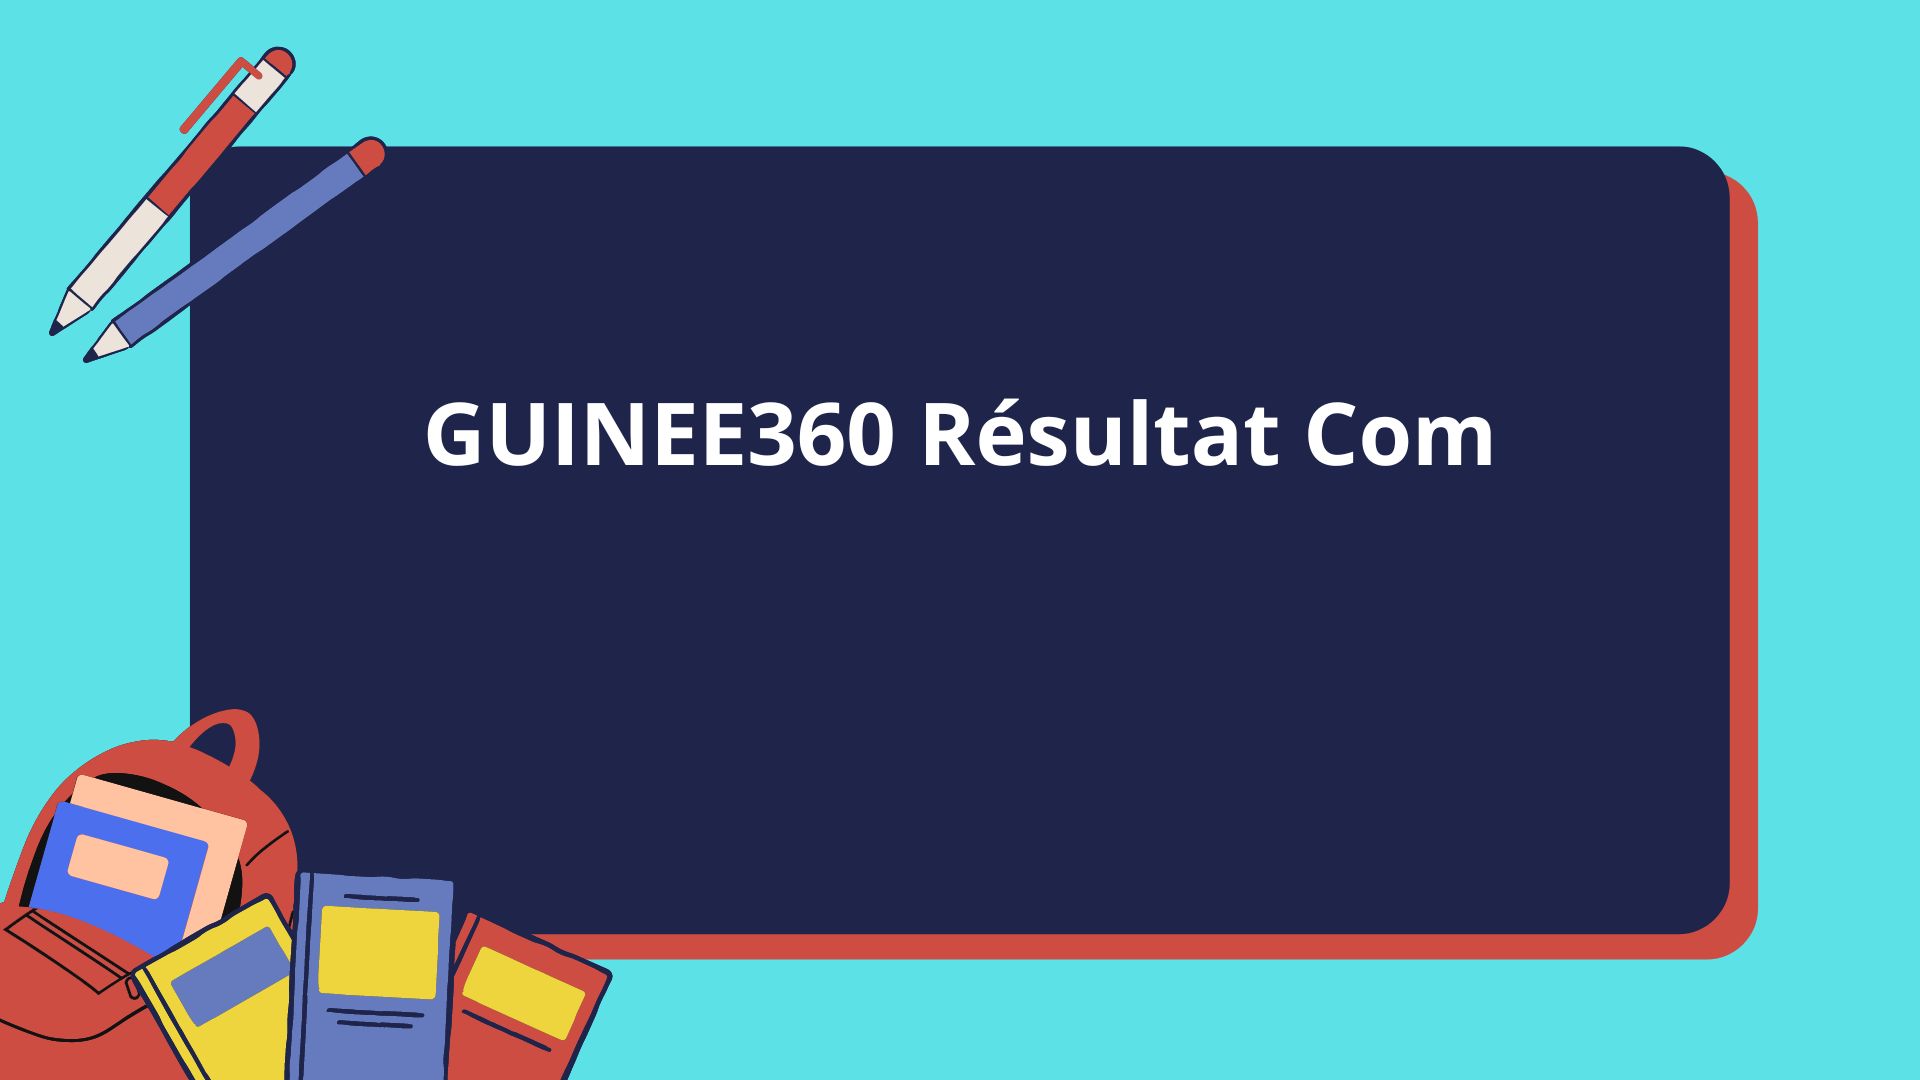 GUINEE360 Résultat Com